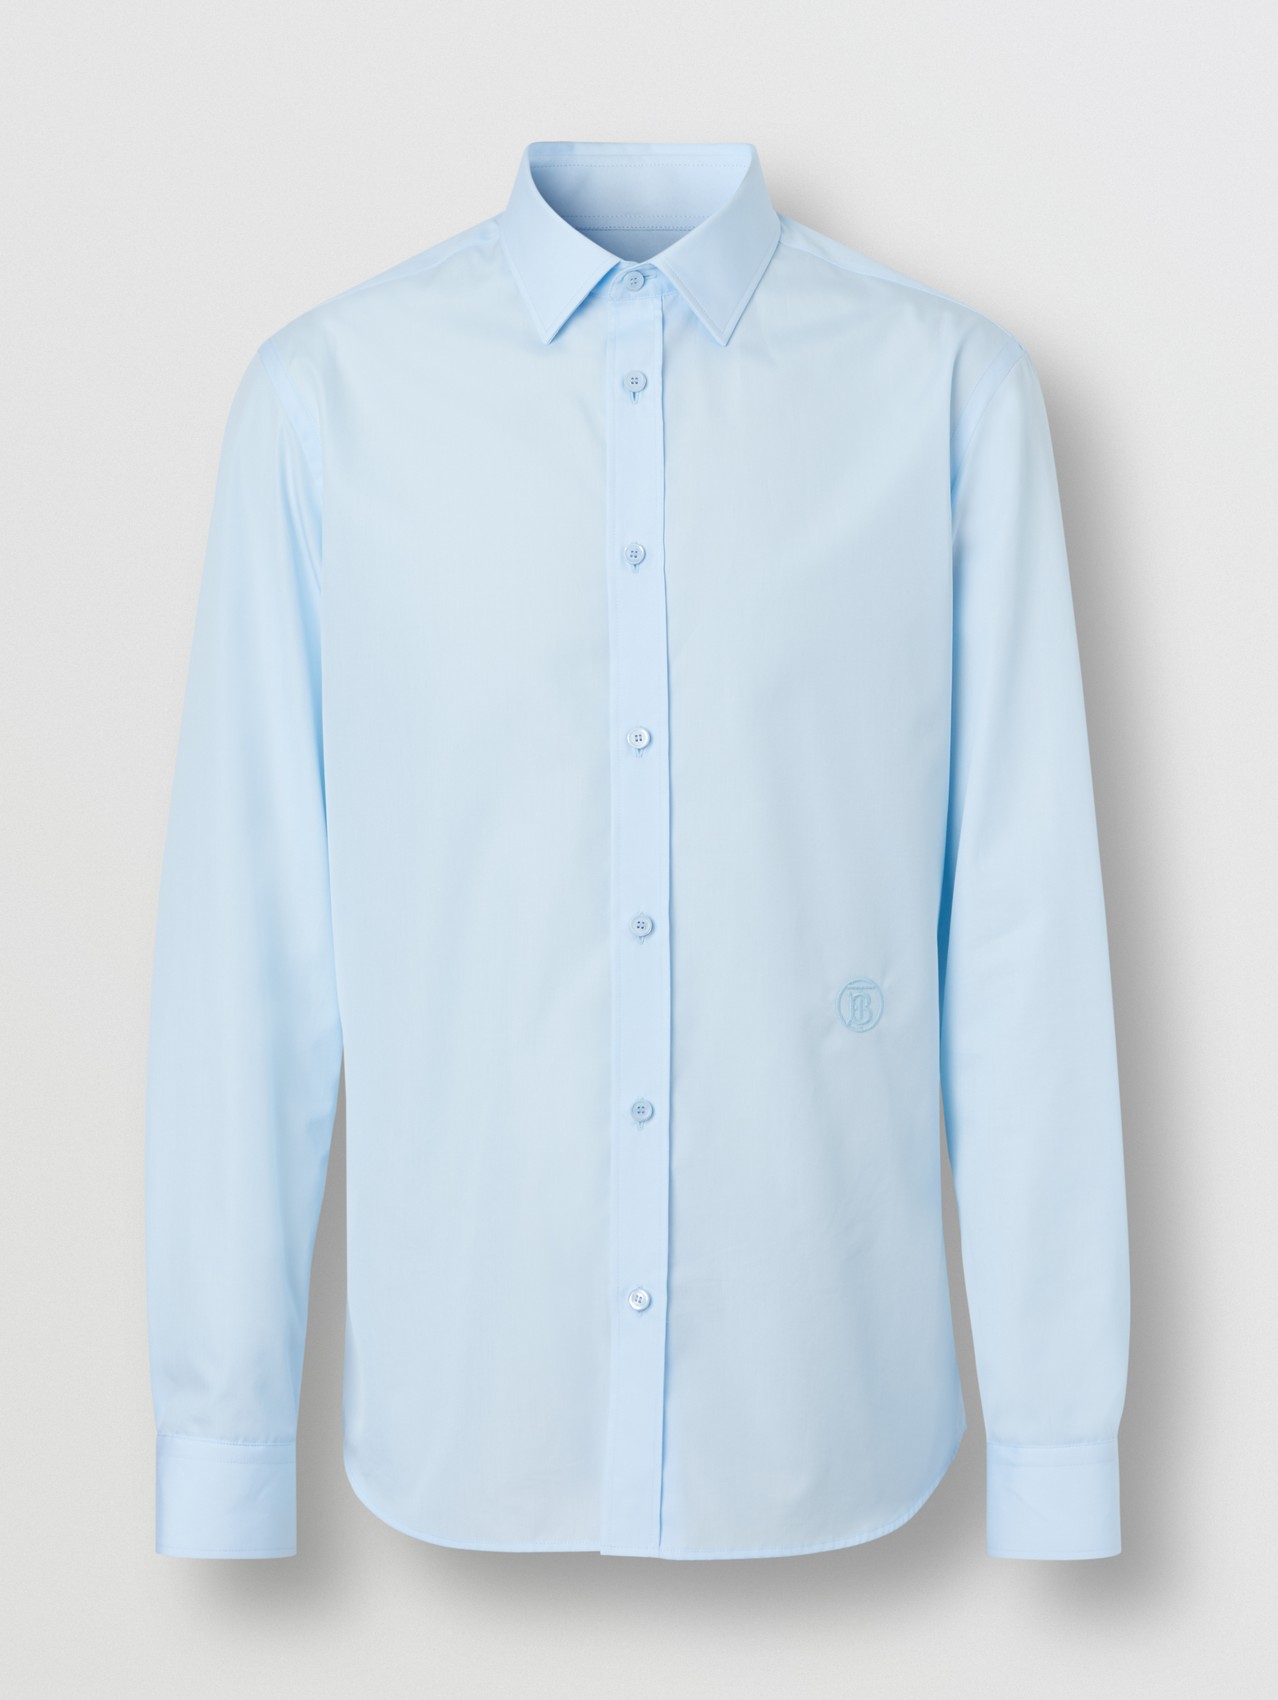 Körperbetontes Hemd aus Baumwollpopelin mit Monogrammmotiv (Hellblau)